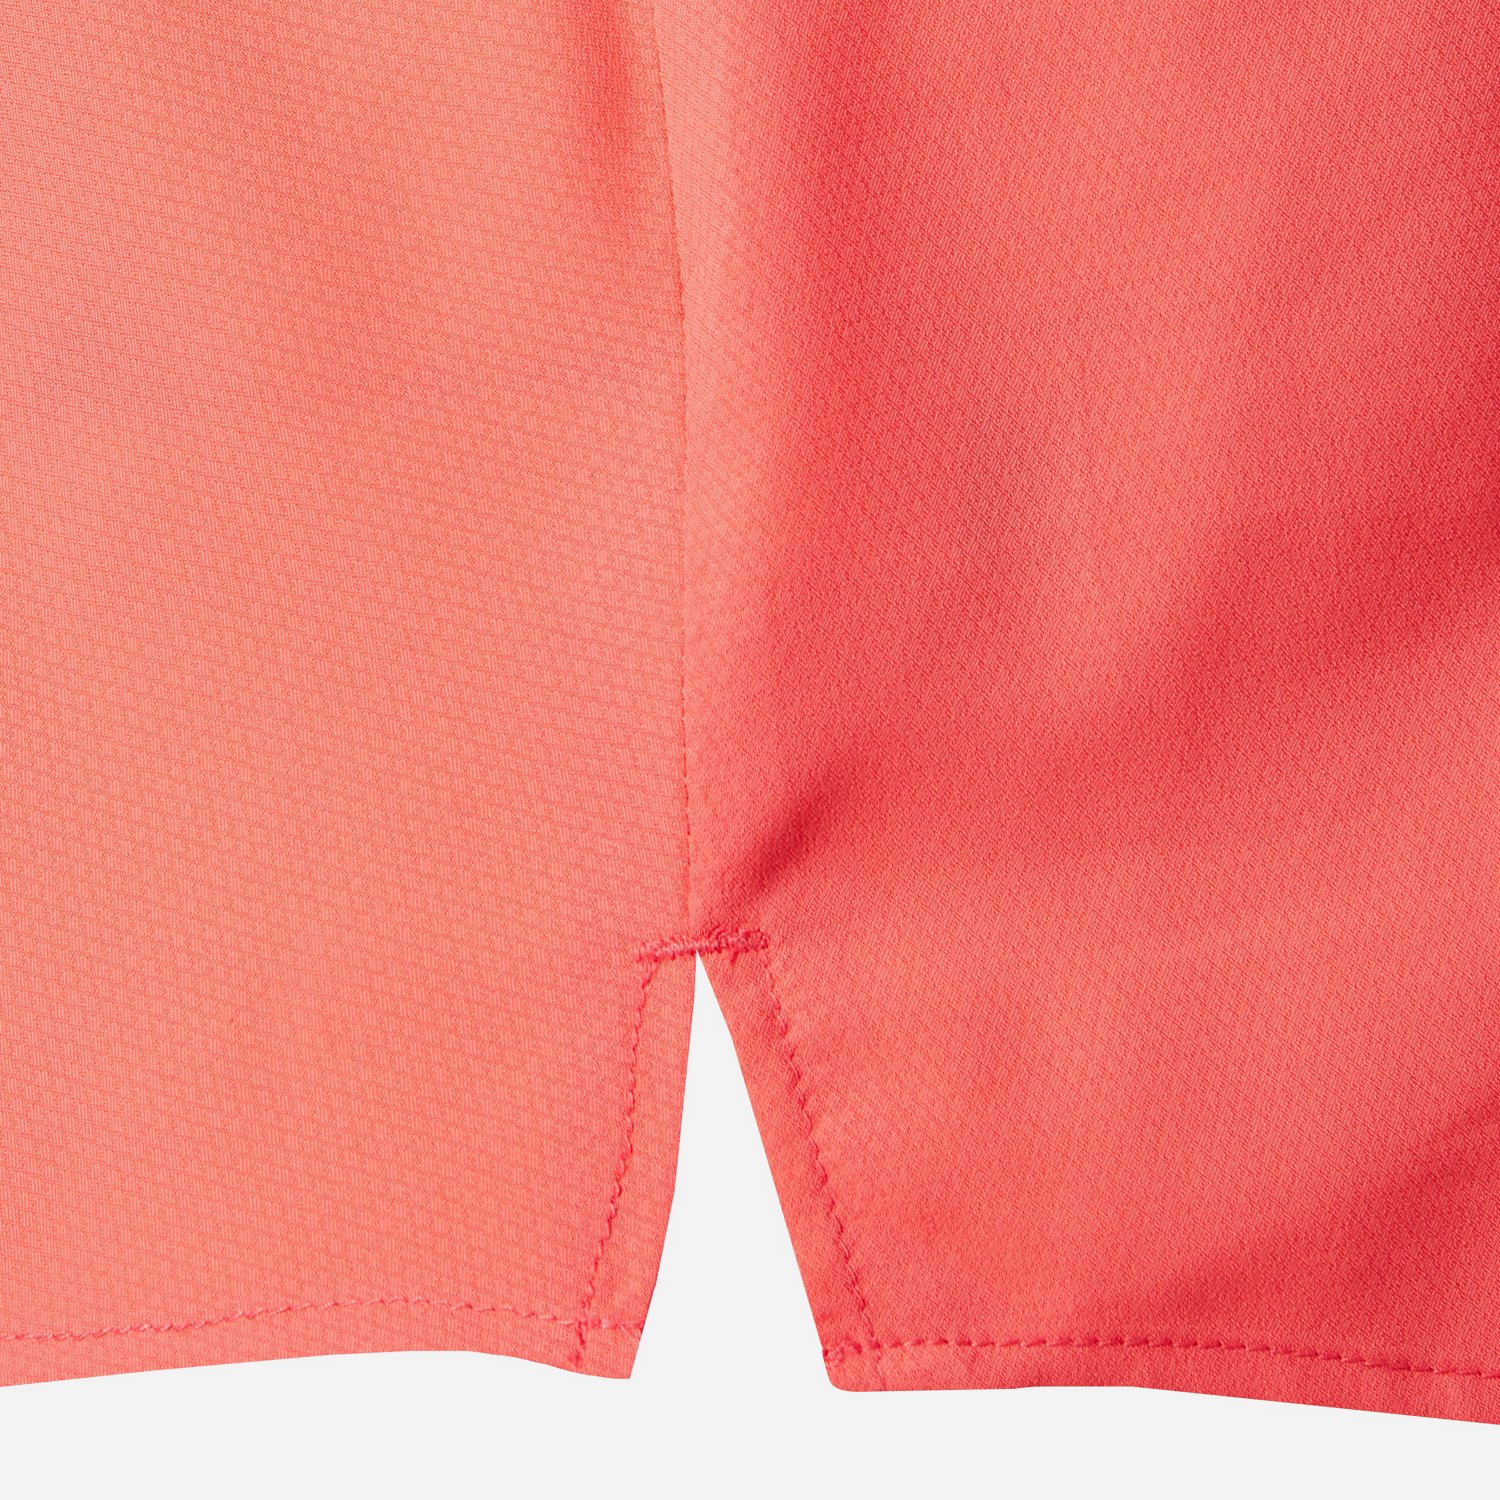 Magellan Outdoors Women's Overcast Plus Size Shirt | Academy